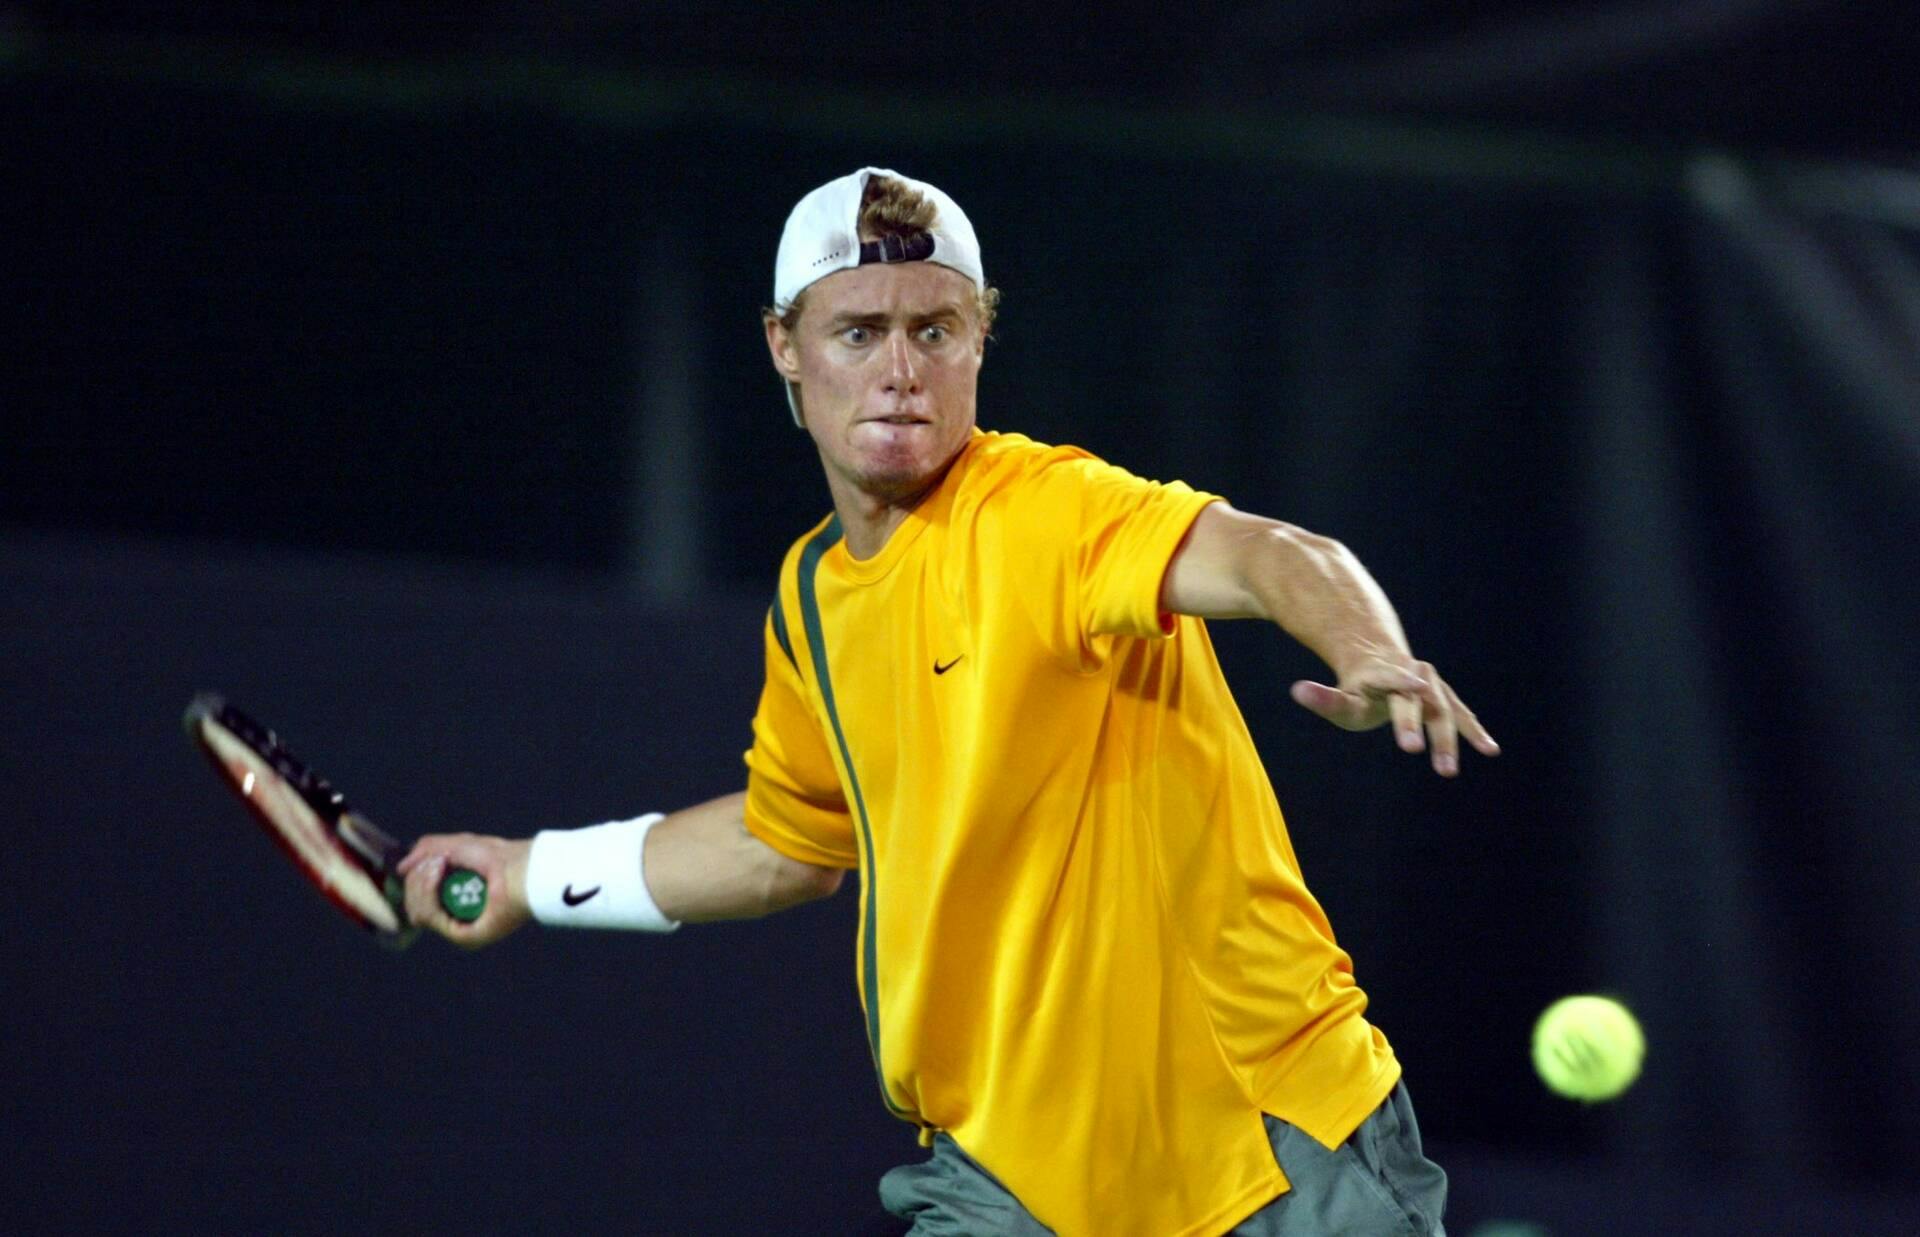 Lleyton Hewitt in action against Roger Federer in 2003